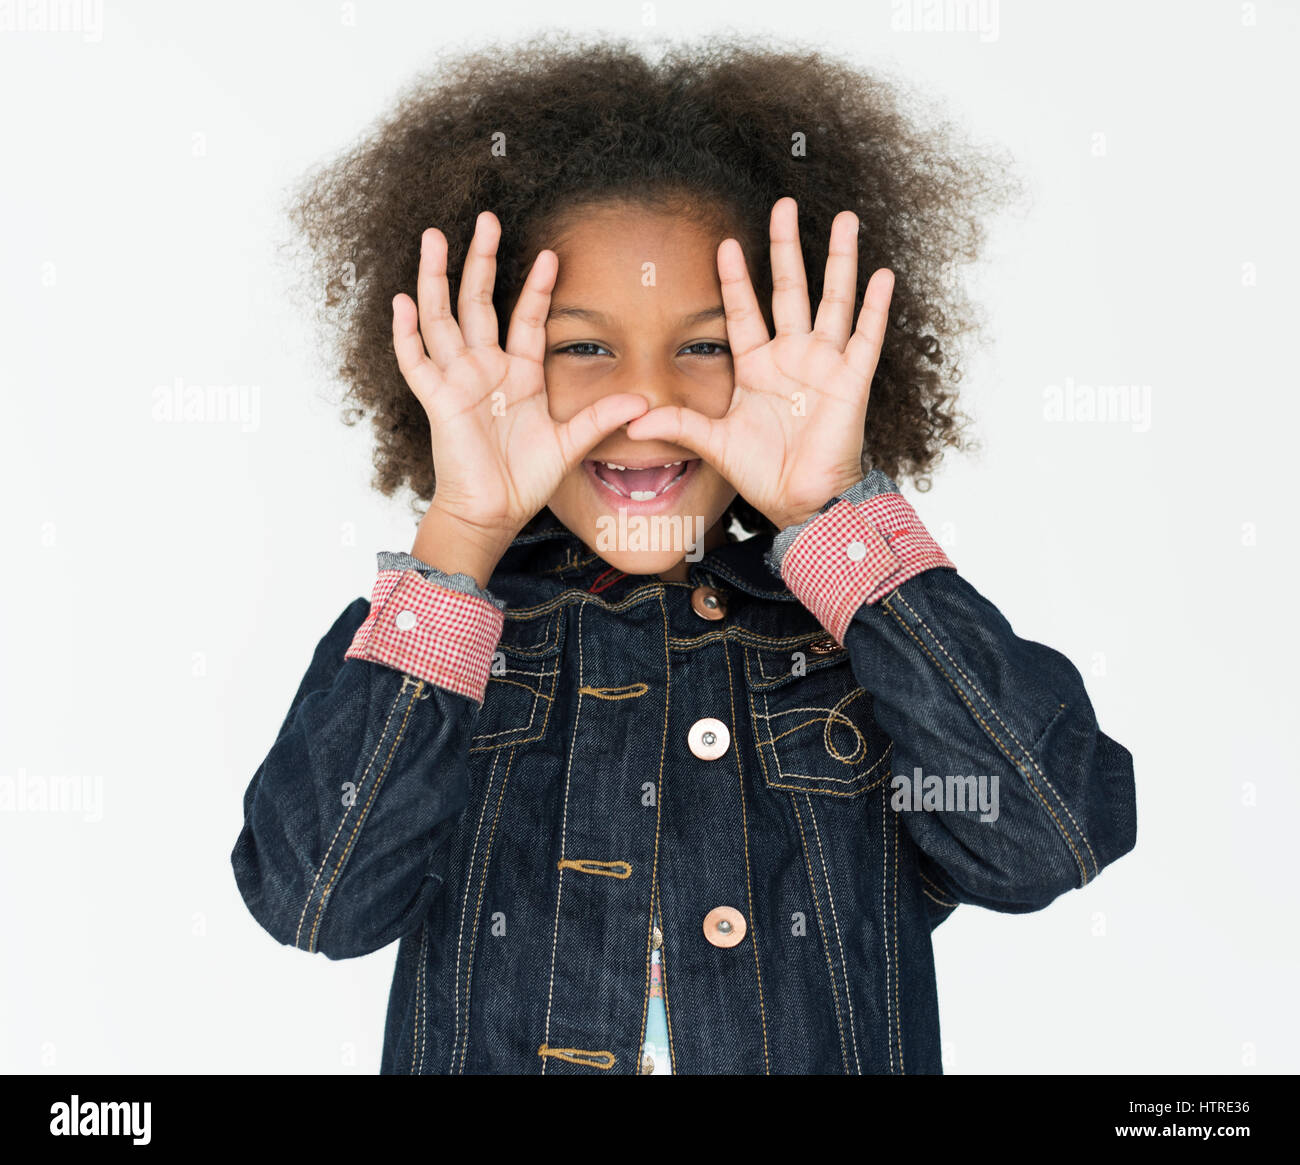 Kid Childhood People Race Emotional Studio Shoot Stock Photo